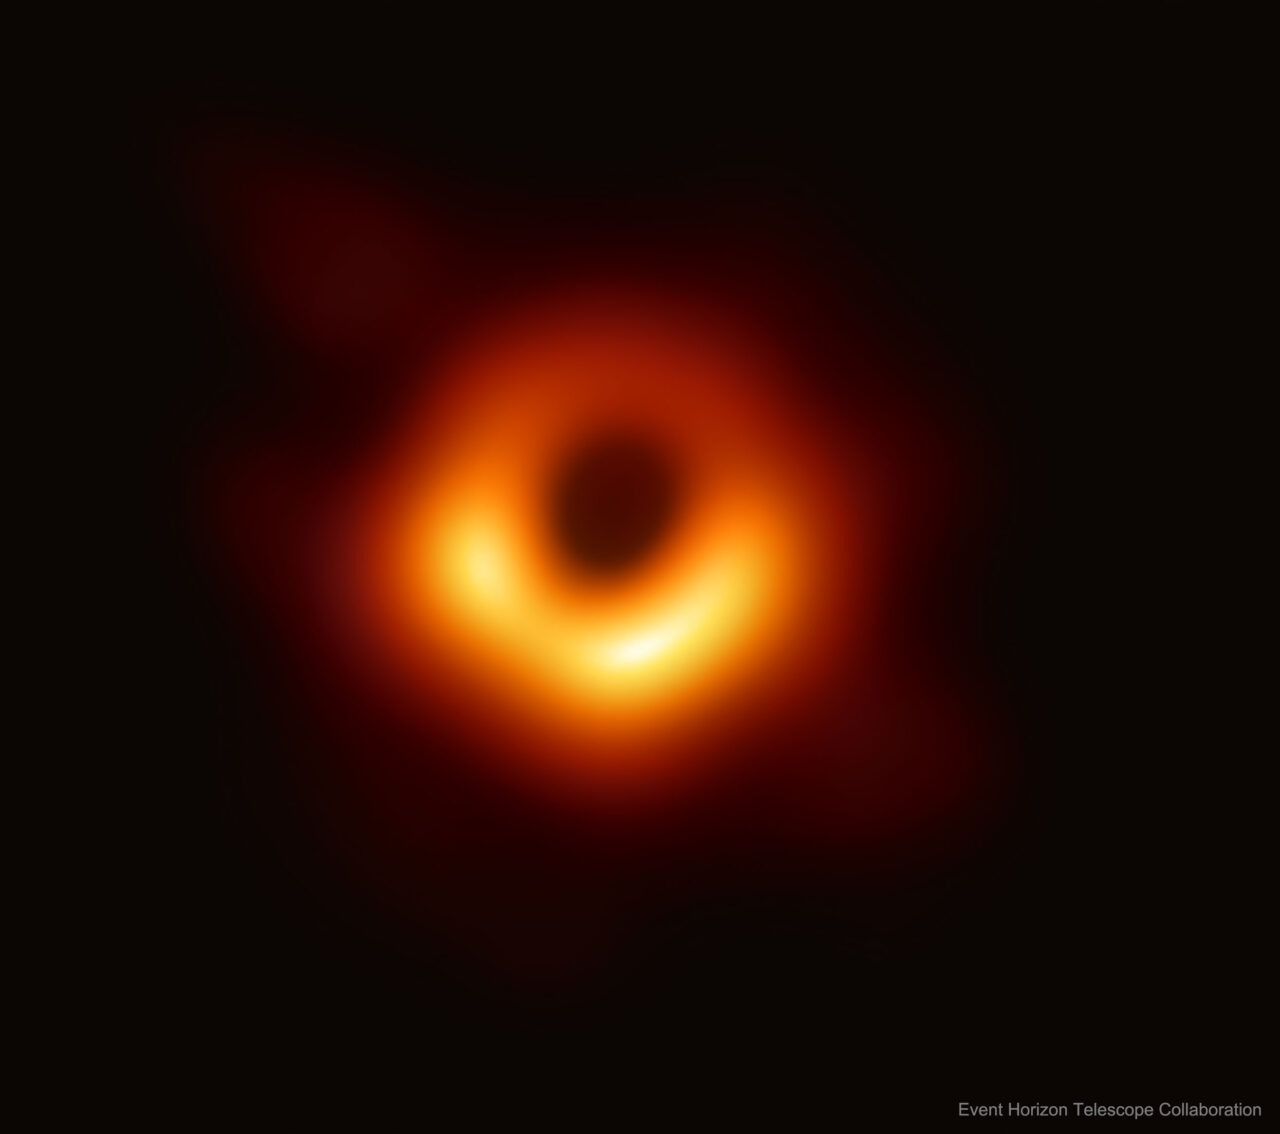 Zdjęcie pierwszego sfotografowanego czarnej dziury, jasne żółte światło koncentruje się wokół ciemnego centralnego punktu na tle rozmytych czerwono-pomarańczowych tonów.